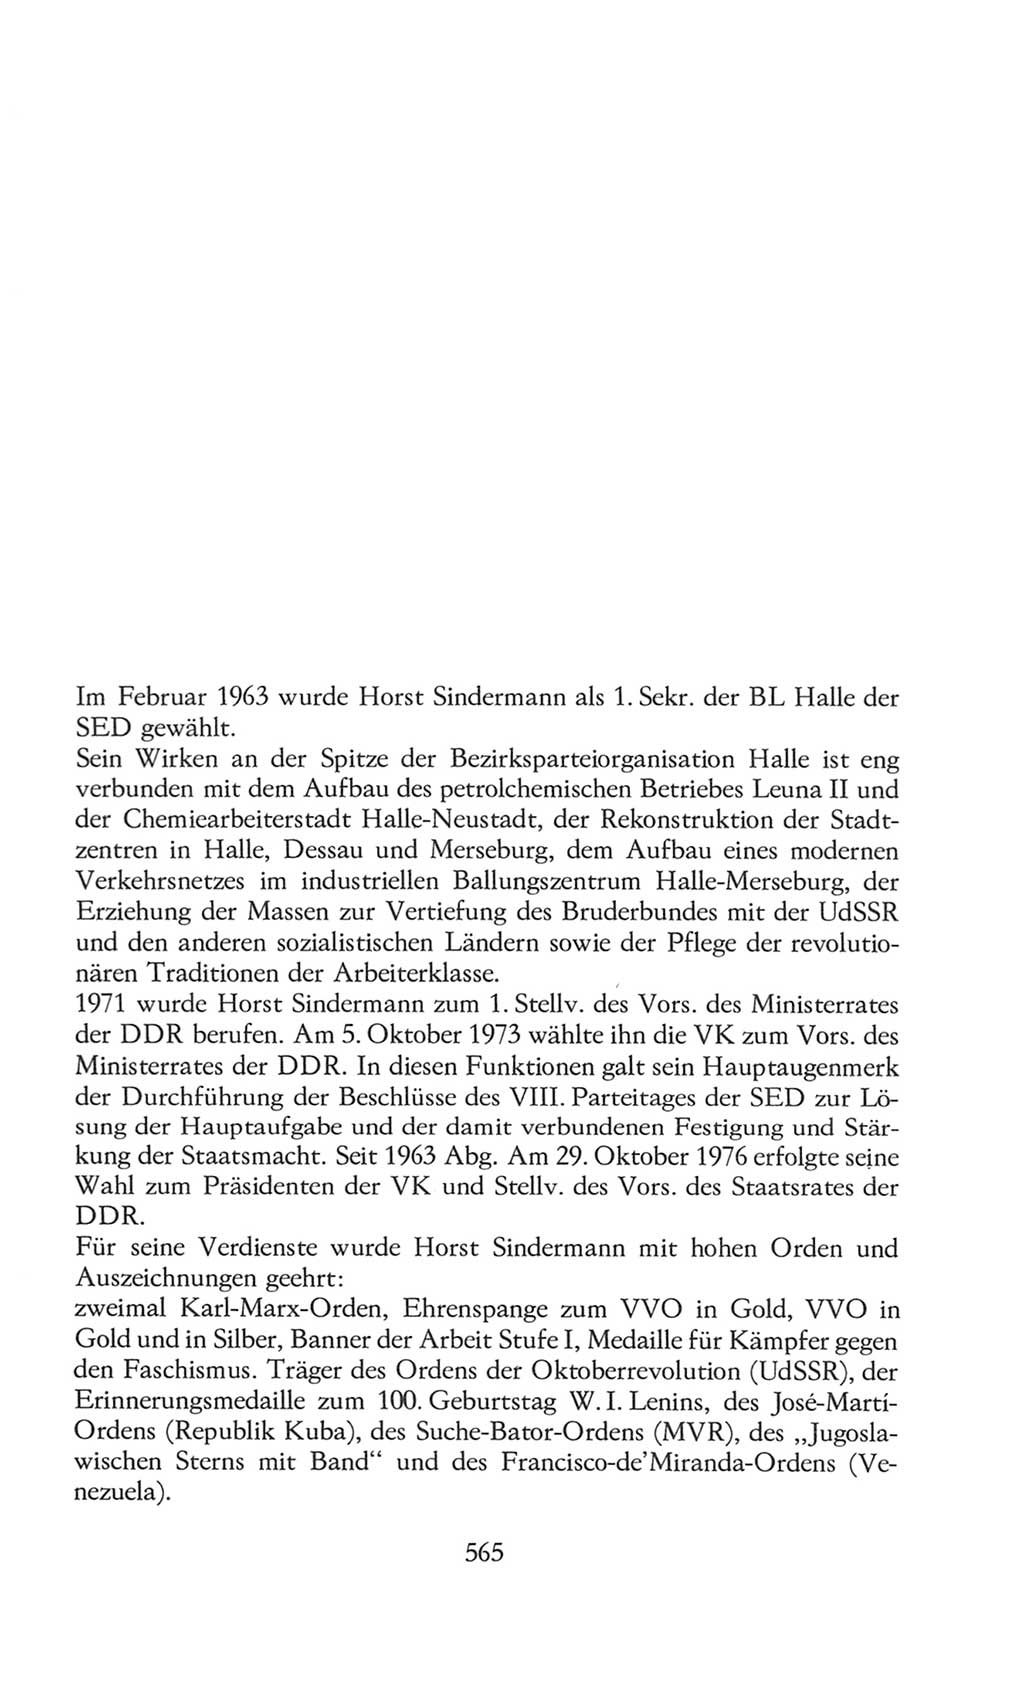 Volkskammer (VK) der Deutschen Demokratischen Republik (DDR), 8. Wahlperiode 1981-1986, Seite 565 (VK. DDR 8. WP. 1981-1986, S. 565)